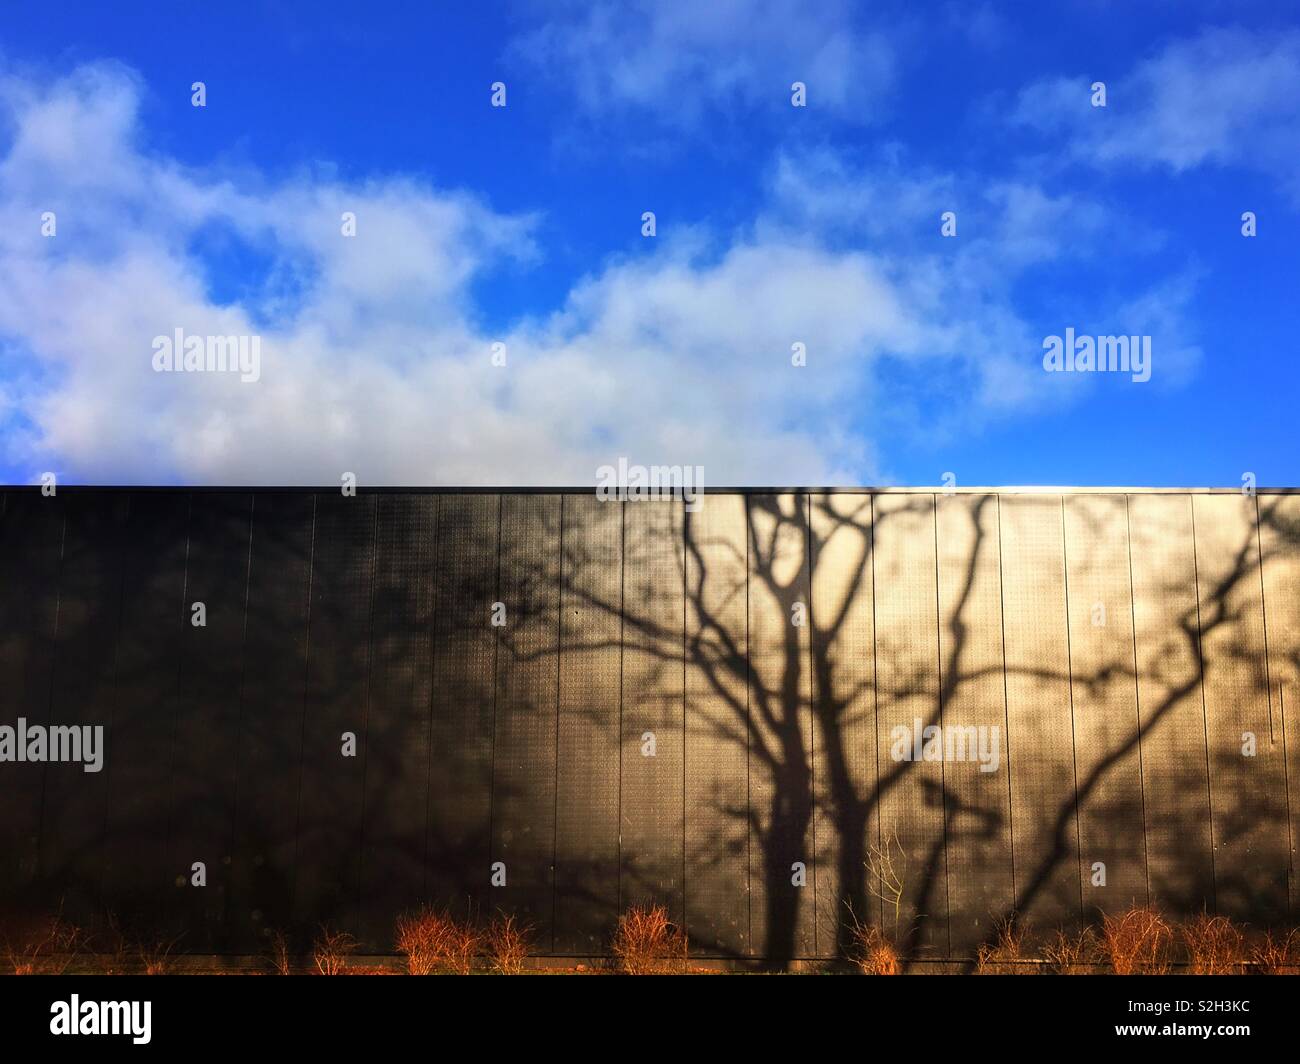 Schatten des Baumes an der Wall gegen den blauen Himmel mit weißen Wolken Stockfoto